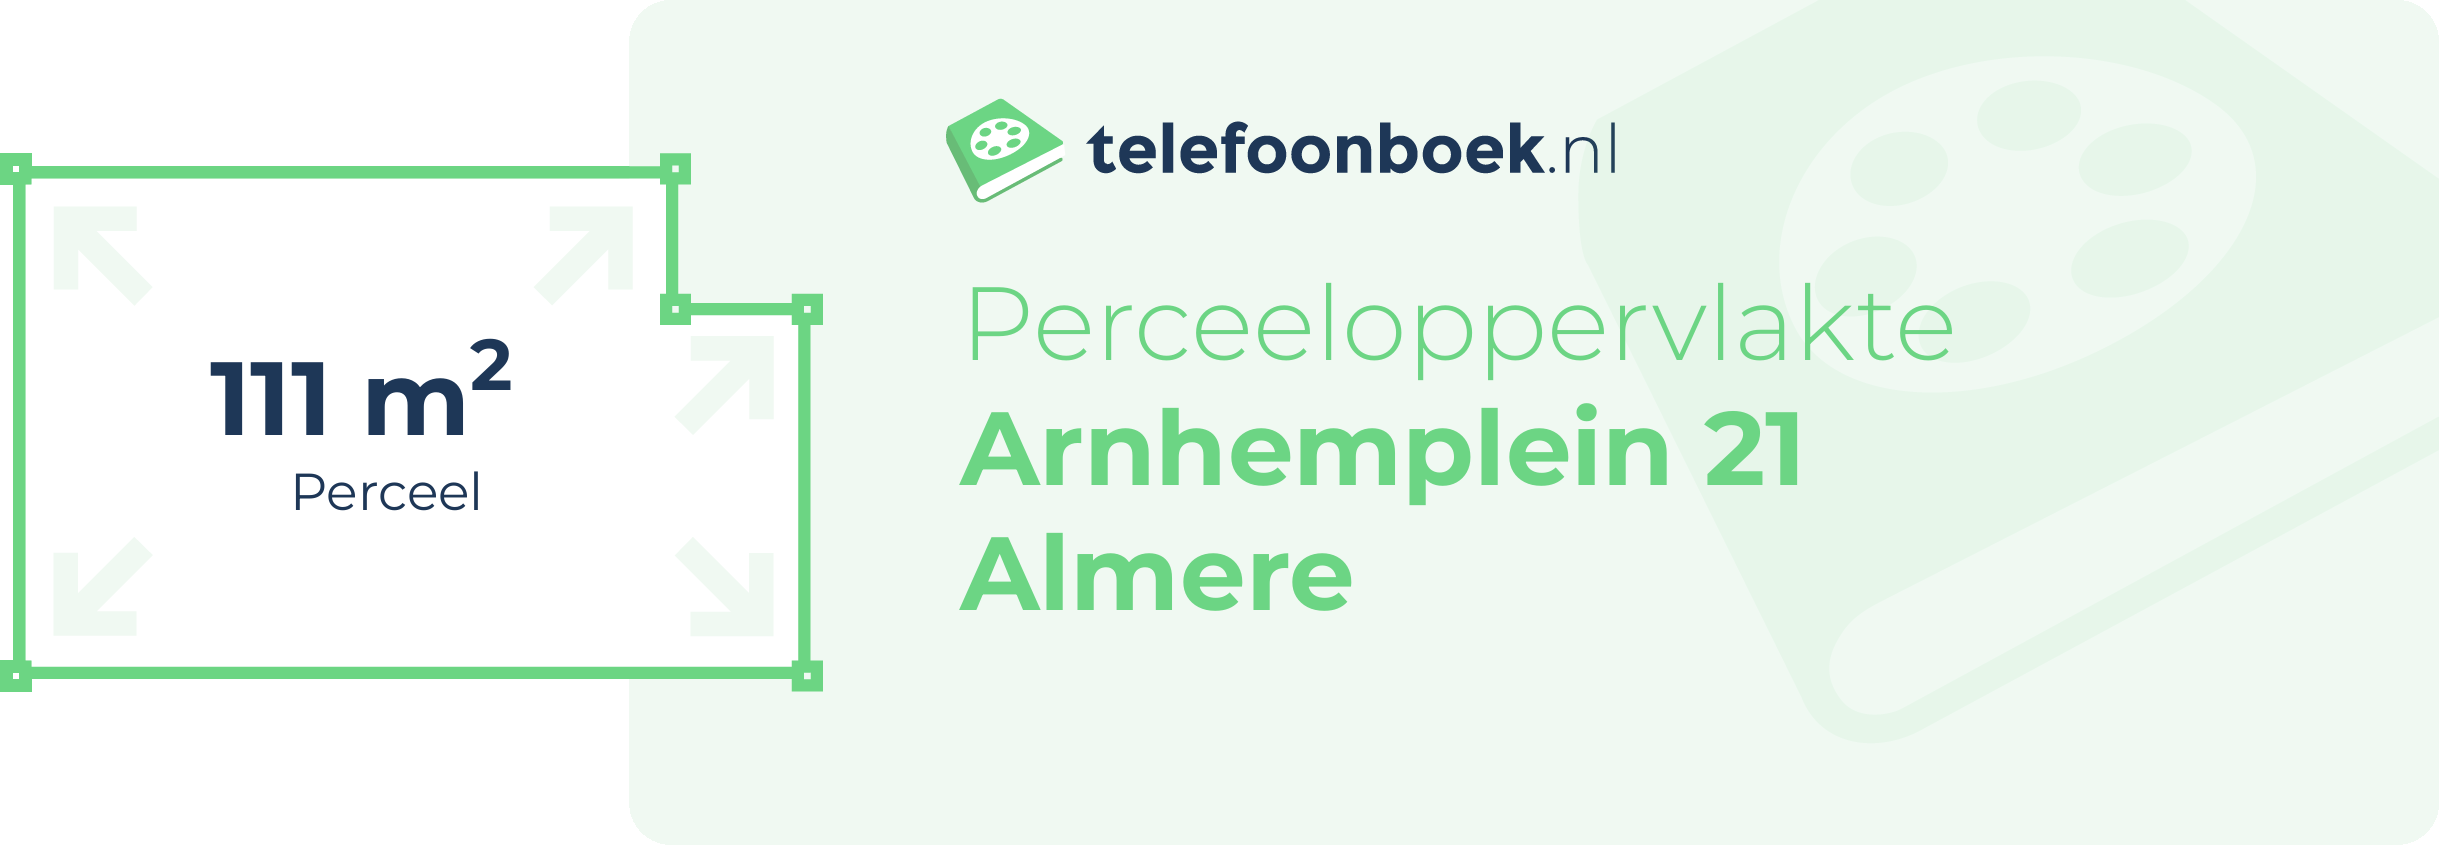 Perceeloppervlakte Arnhemplein 21 Almere